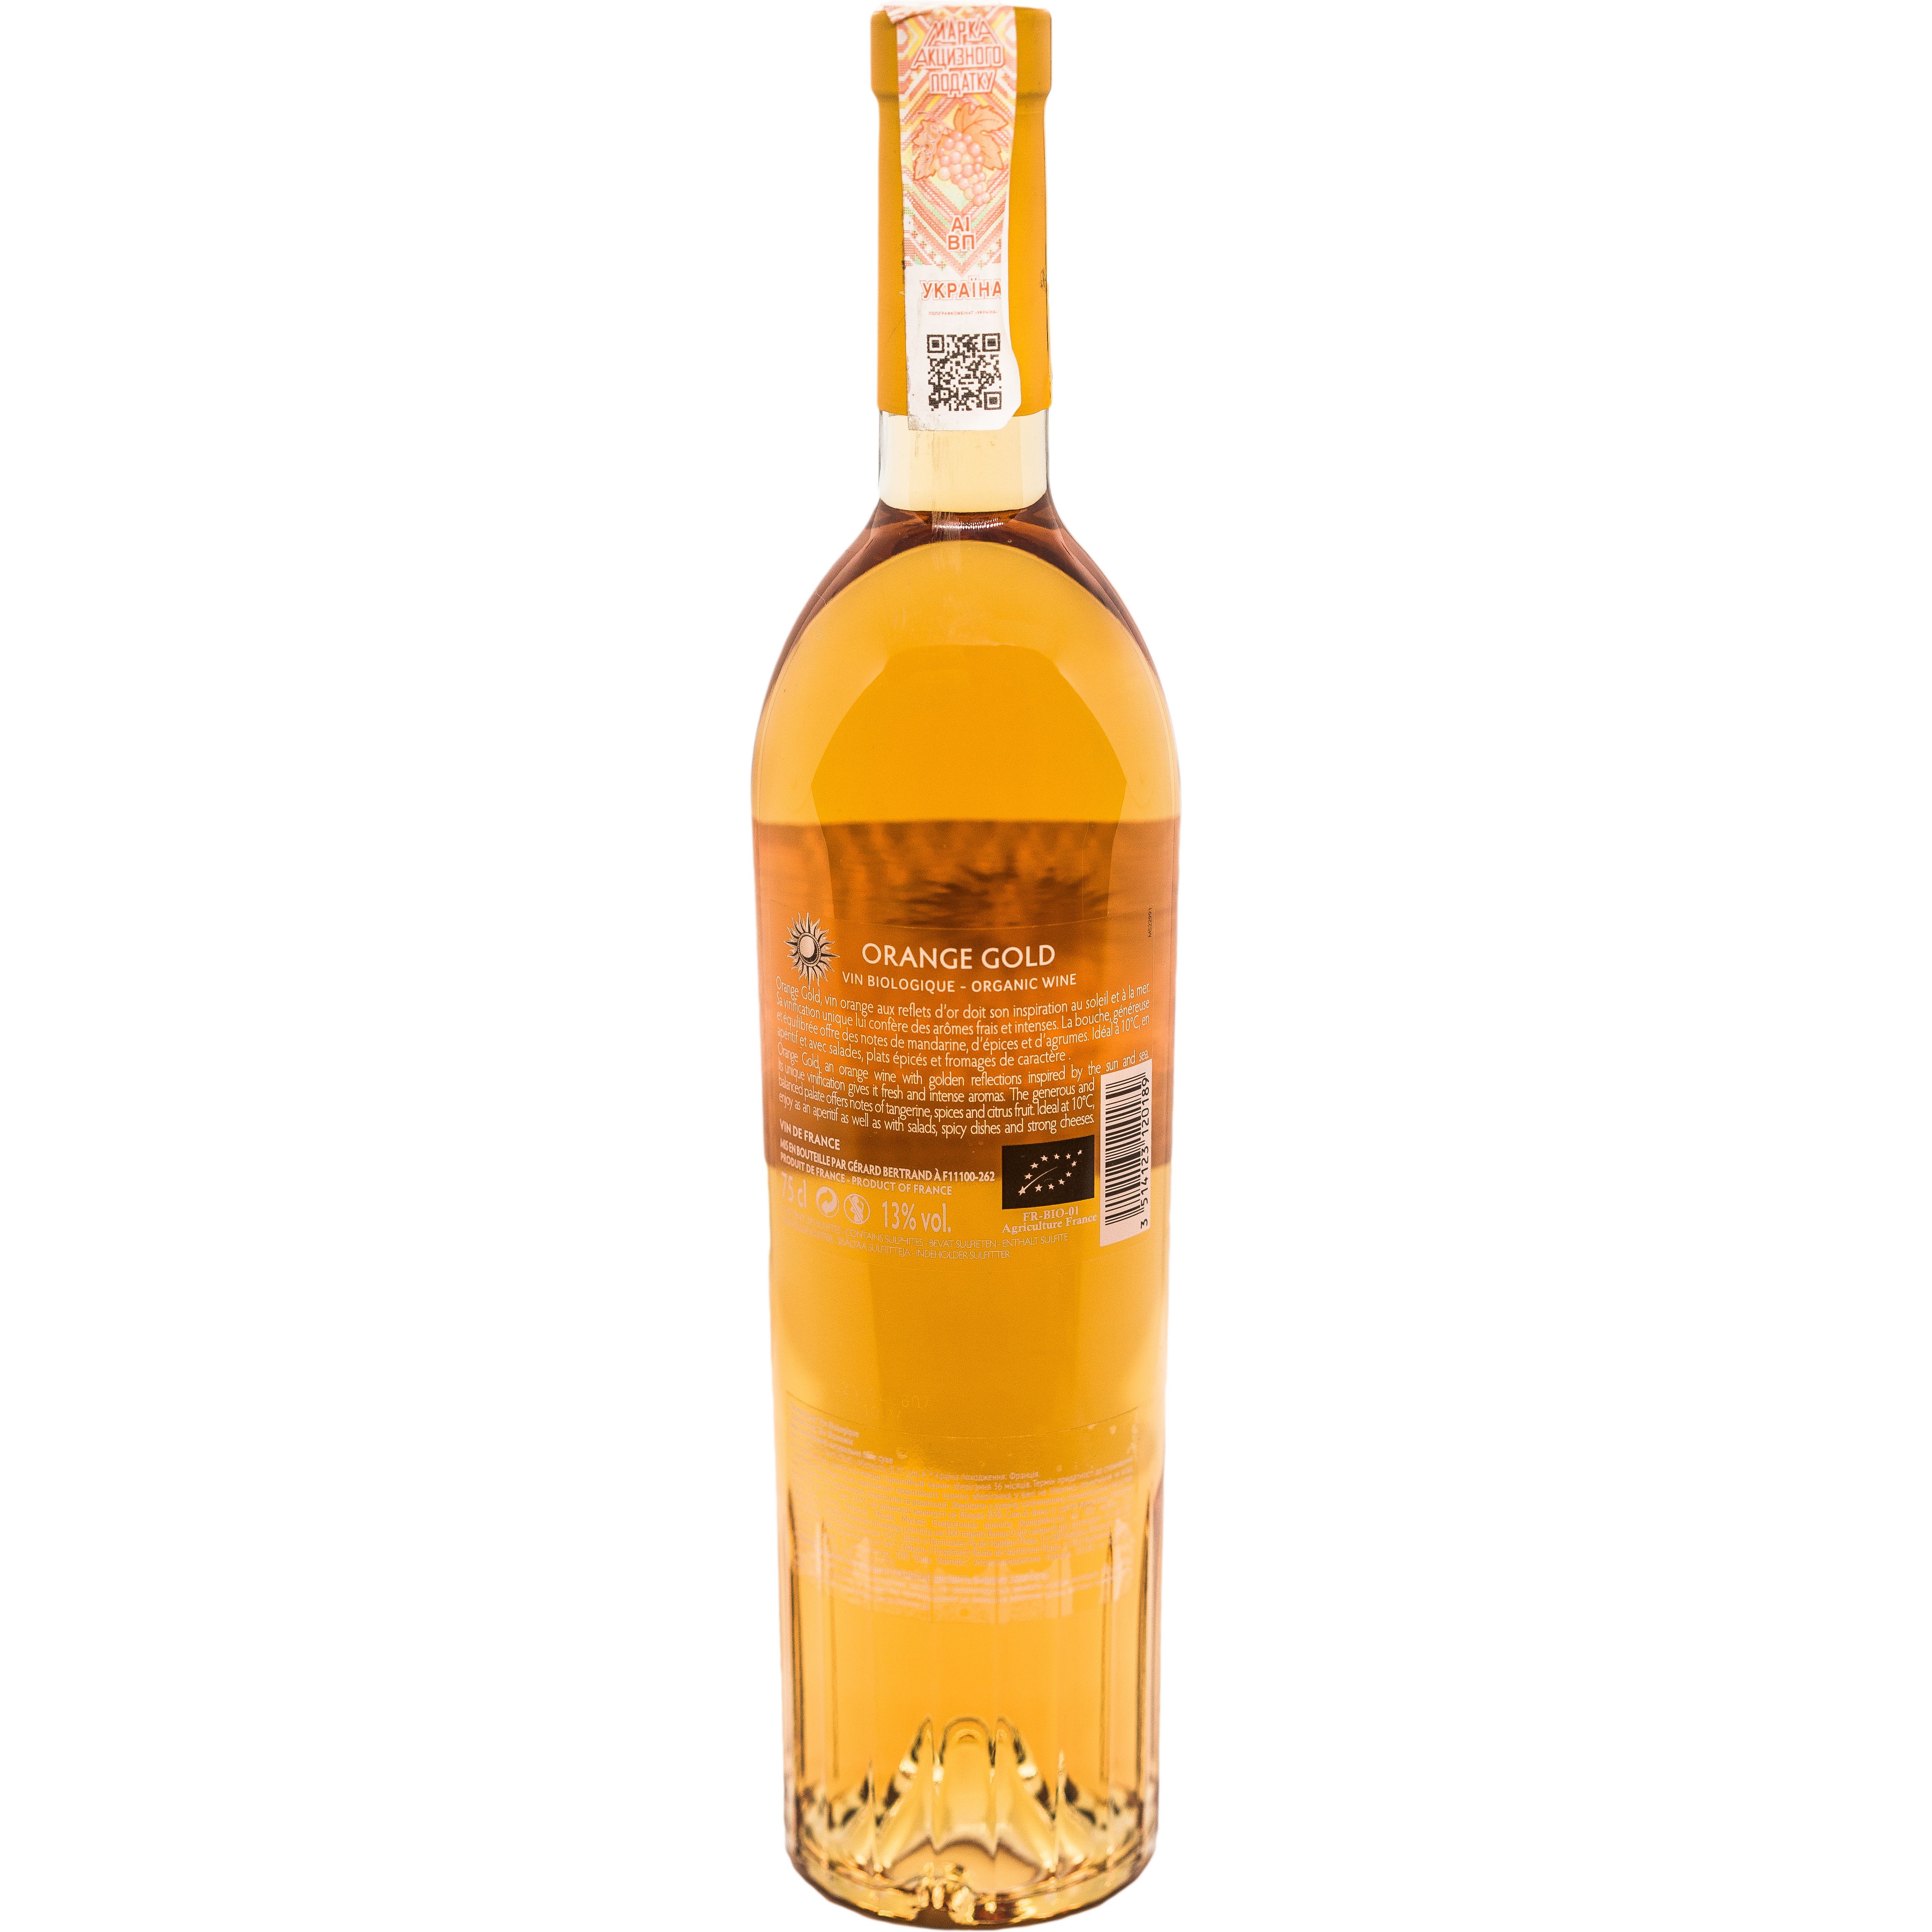 Вино Gerard Bertrand Orange Gold Vin Biologiquec, оранжевое, сухое, 0,75 л - фото 2